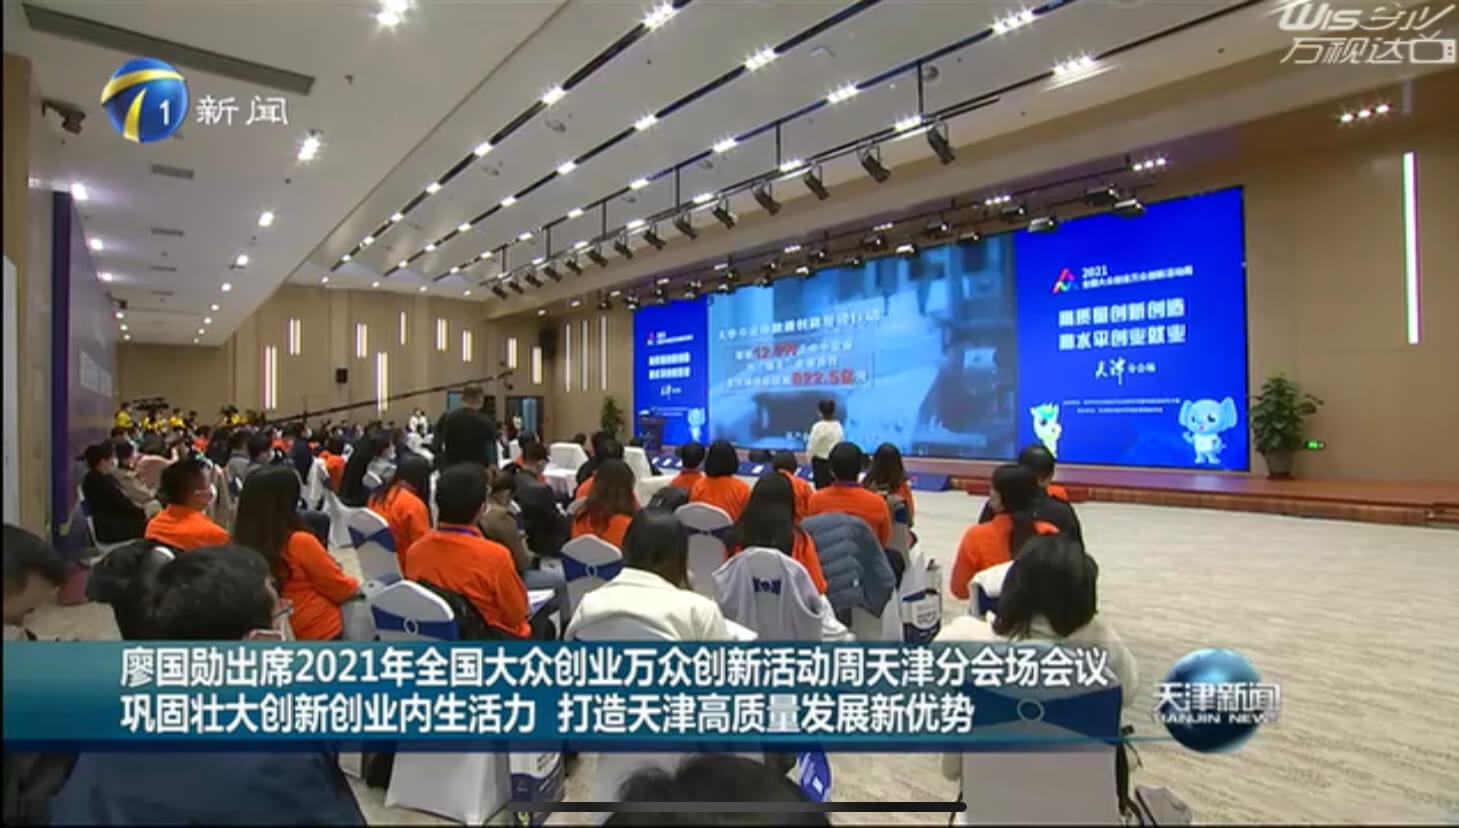 云账户董事长杨晖在2021年全国双创周天津分会场会议发言